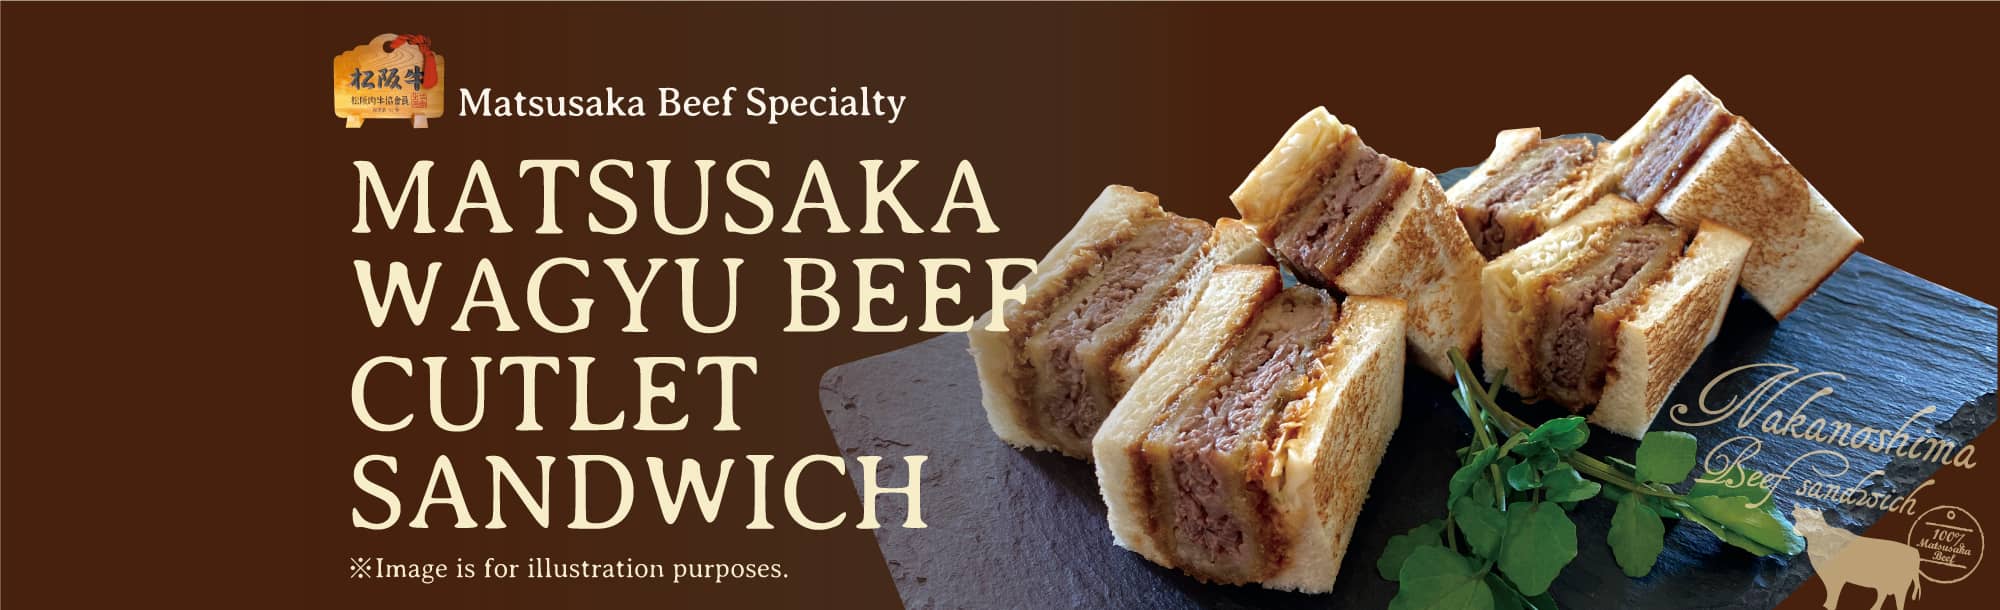 Mastsusaka wagyu beef Beef Cutlet Sandwich